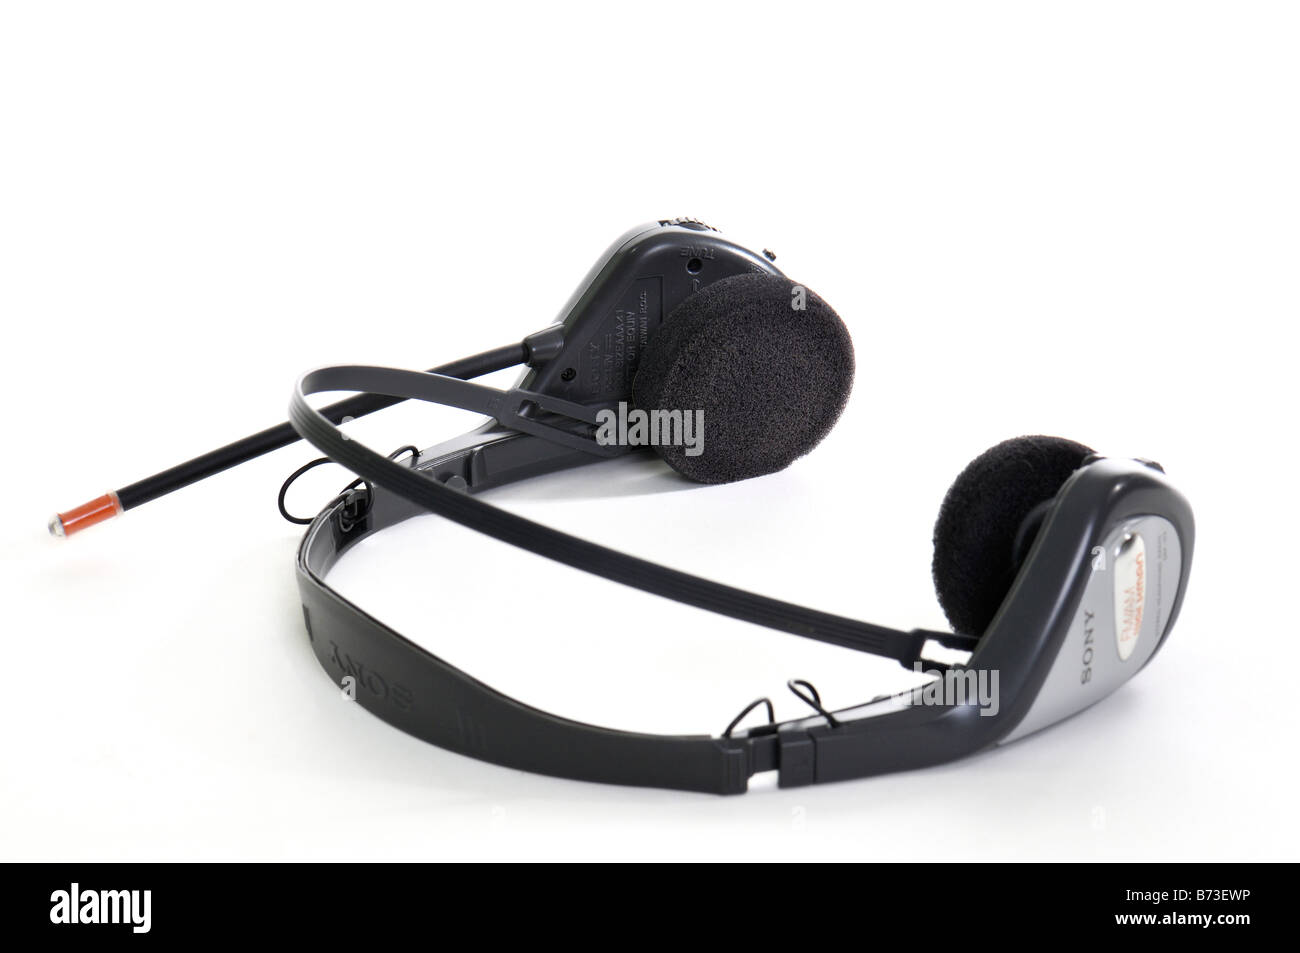 A Sony Walkman AM FM radio headset on white background. USA Stock Photo -  Alamy